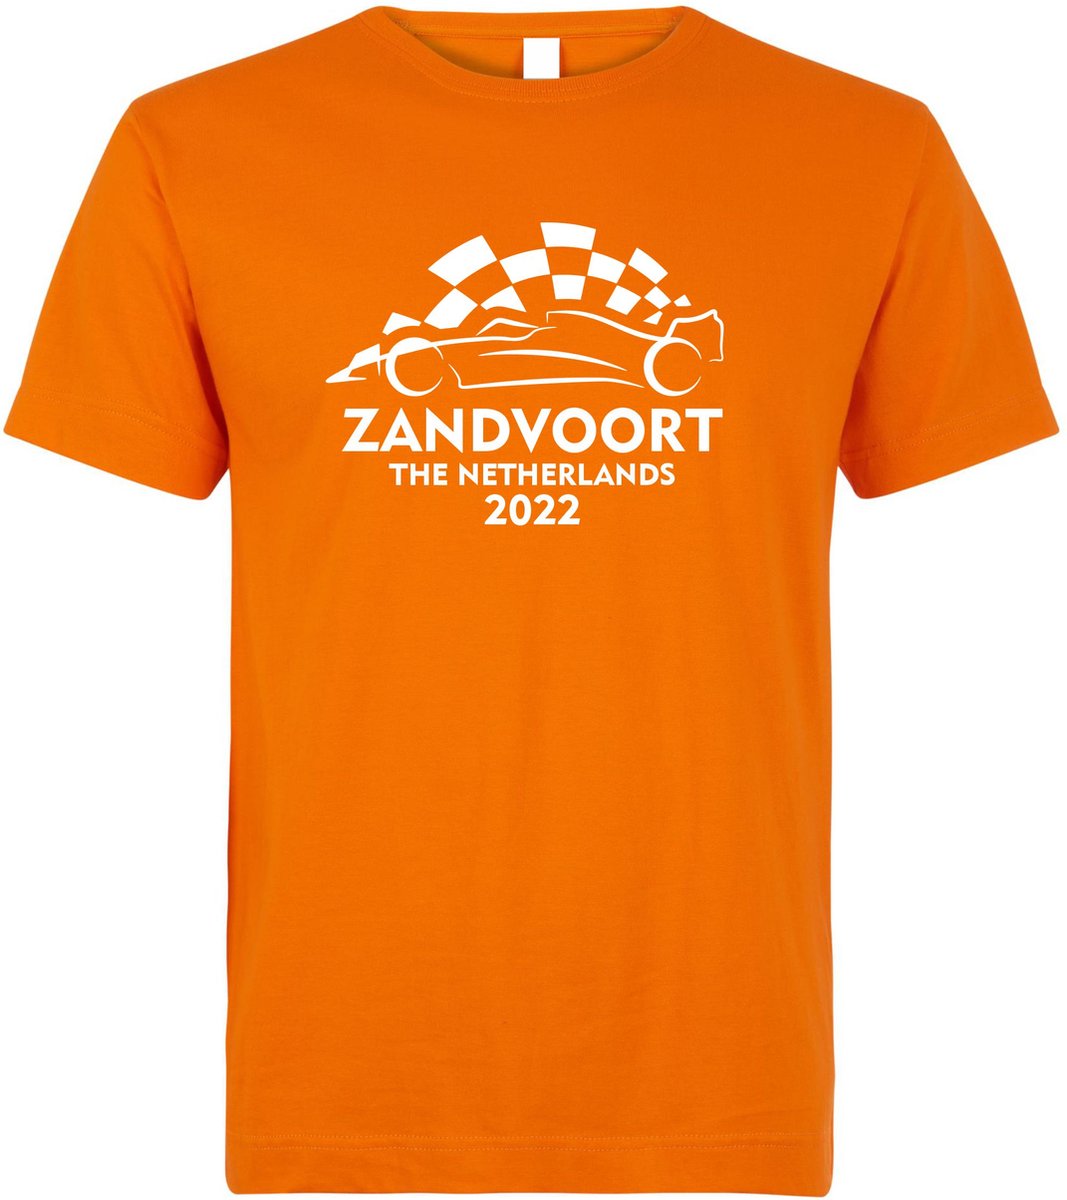 T-shirt Zandvoort The Netherlands 2022 met raceauto | Max Verstappen / Red Bull Racing / Formule 1 fan | Grand Prix Circuit Zandvoort | kleding shirt | Oranje | maat 5XL